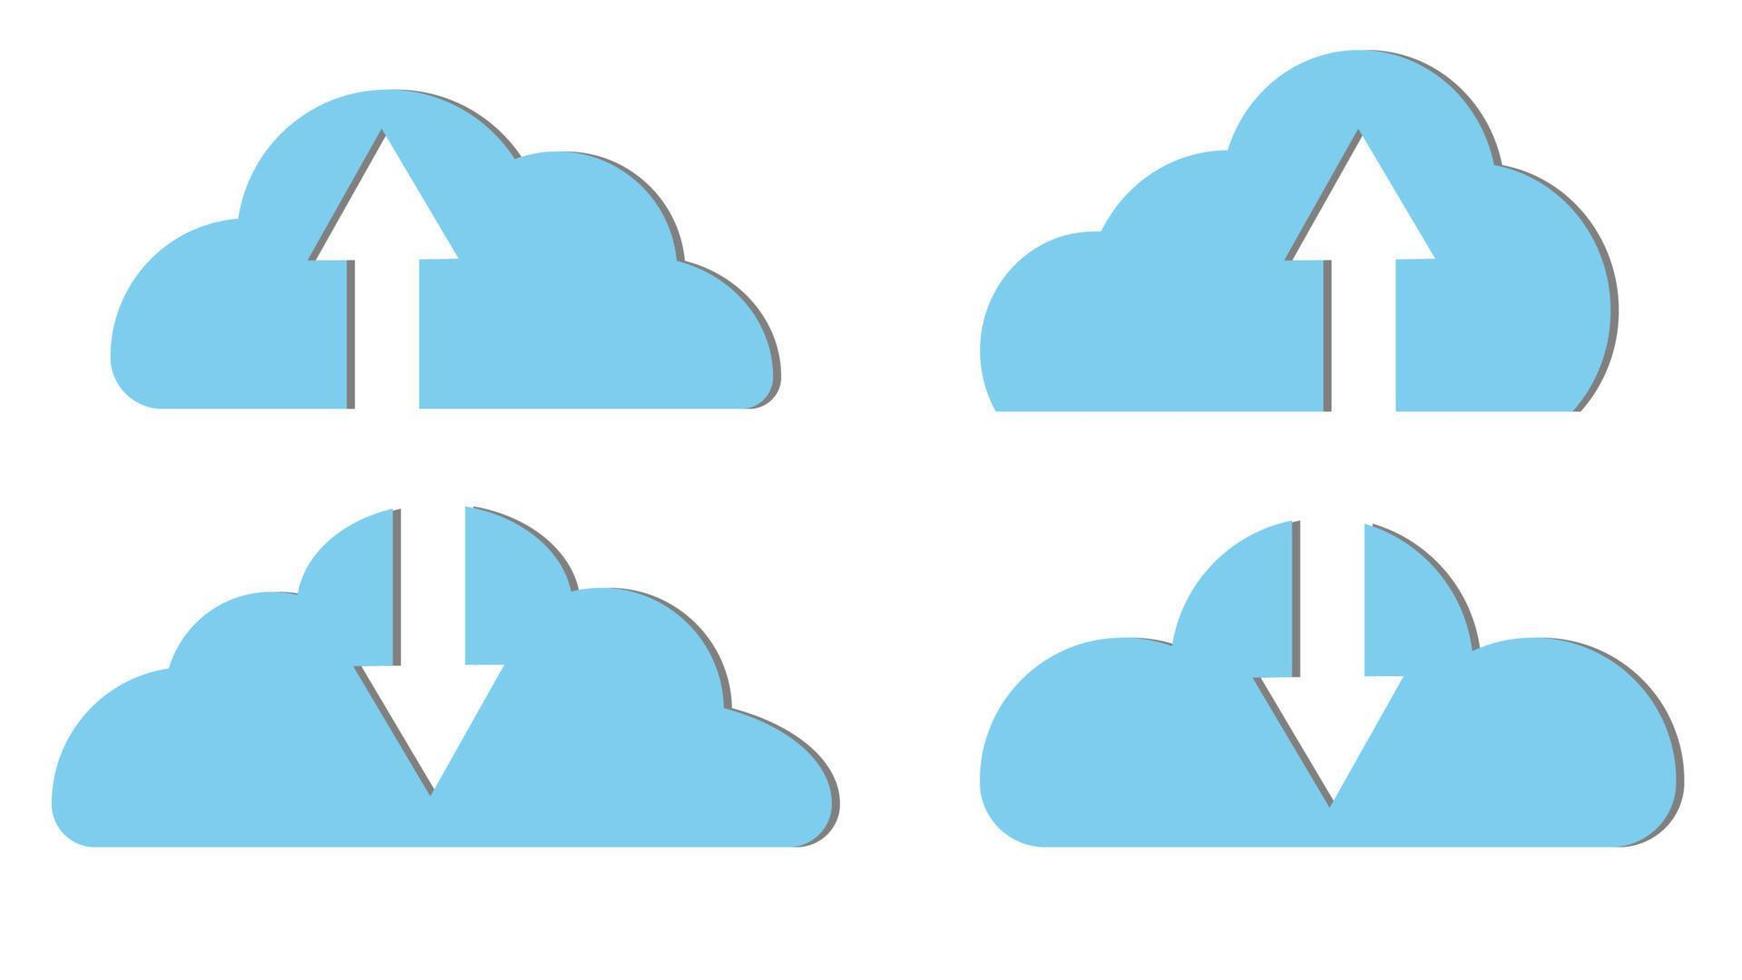 impostato di quattro blu bellissimo semplice digitale nube icone con frecce Scarica. concetto nube tecnologie e Servizi, a distanza Conservazione di informazione. vettore illustrazione